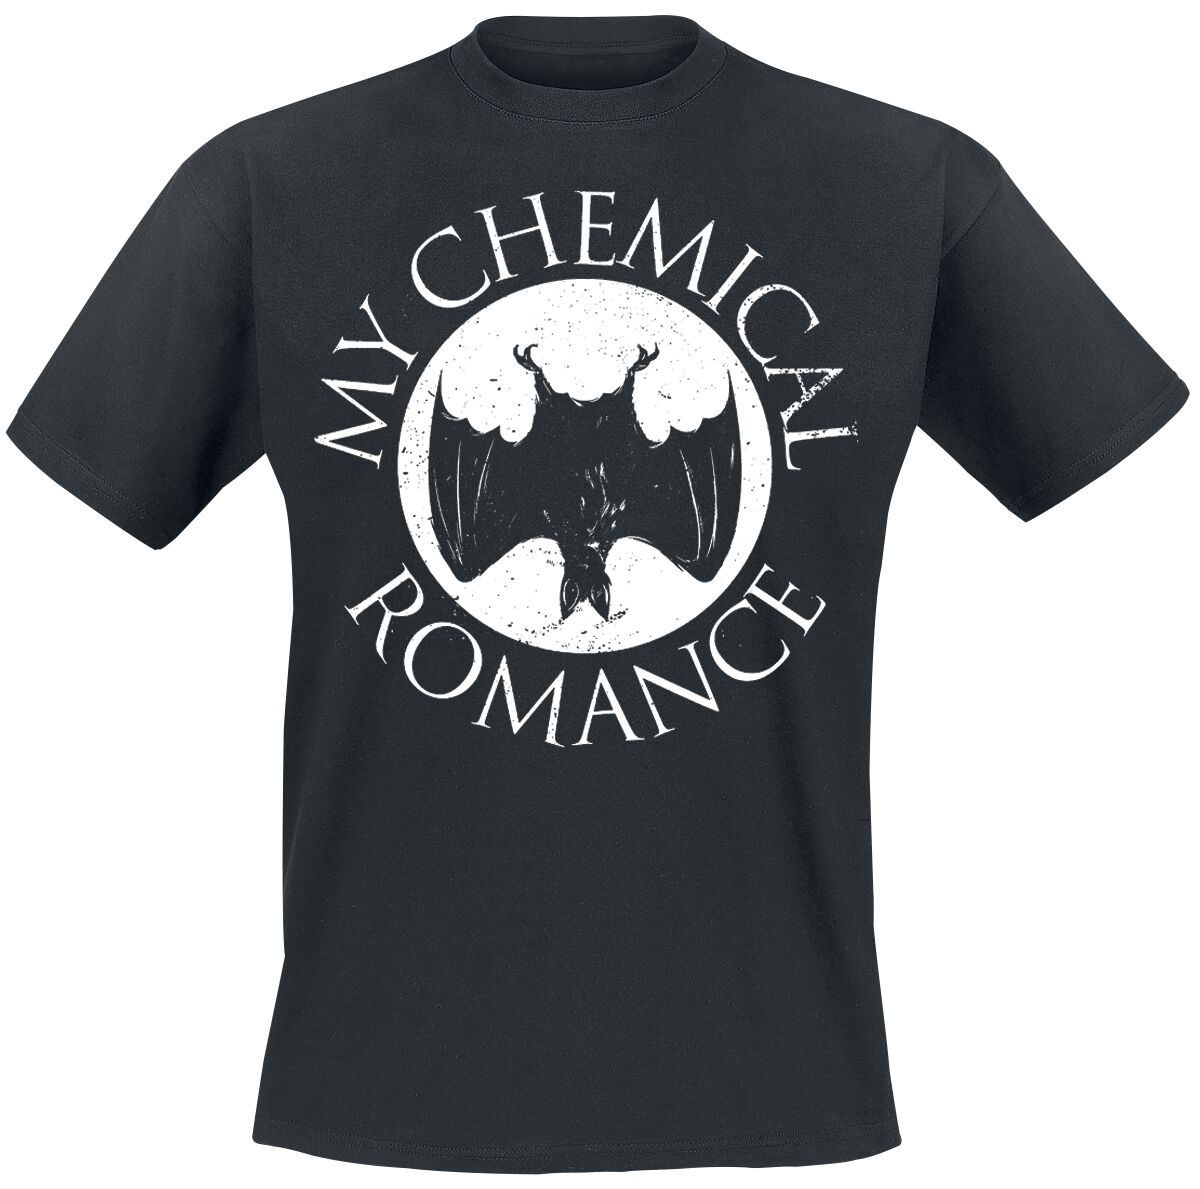 My Chemical Romance T-Shirt - Bat - S bis XXL - für Männer - Größe XXL - schwarz  - EMP exklusives Merchandise!